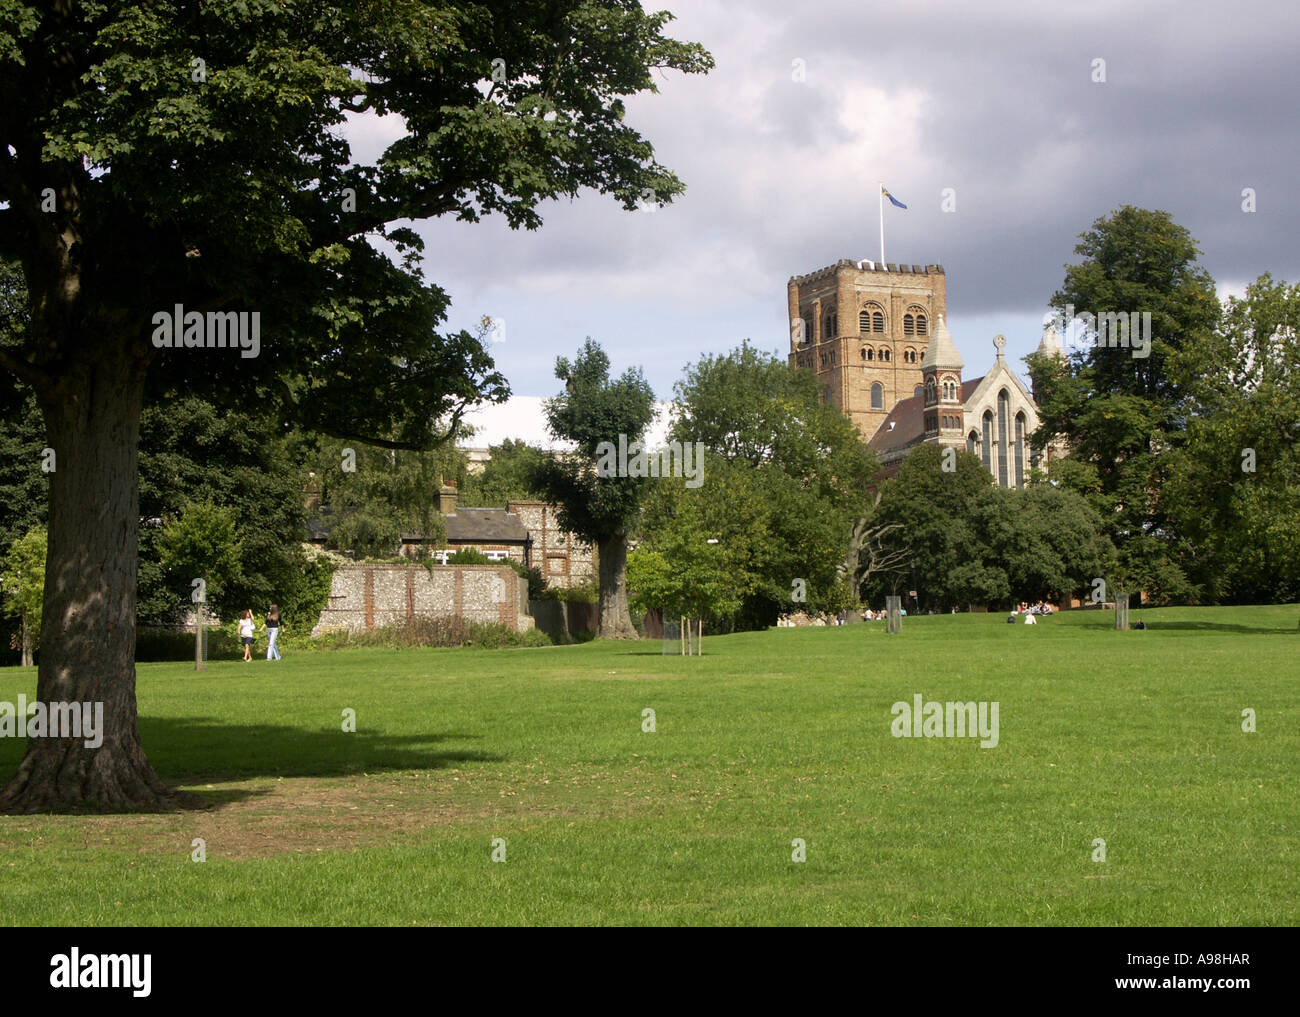 La tour de la cathédrale de St Albans, vu de la cathédrales. St Albans, Hertfordshire, Angleterre, Royaume-Uni, Grande Bretagne, , Banque D'Images